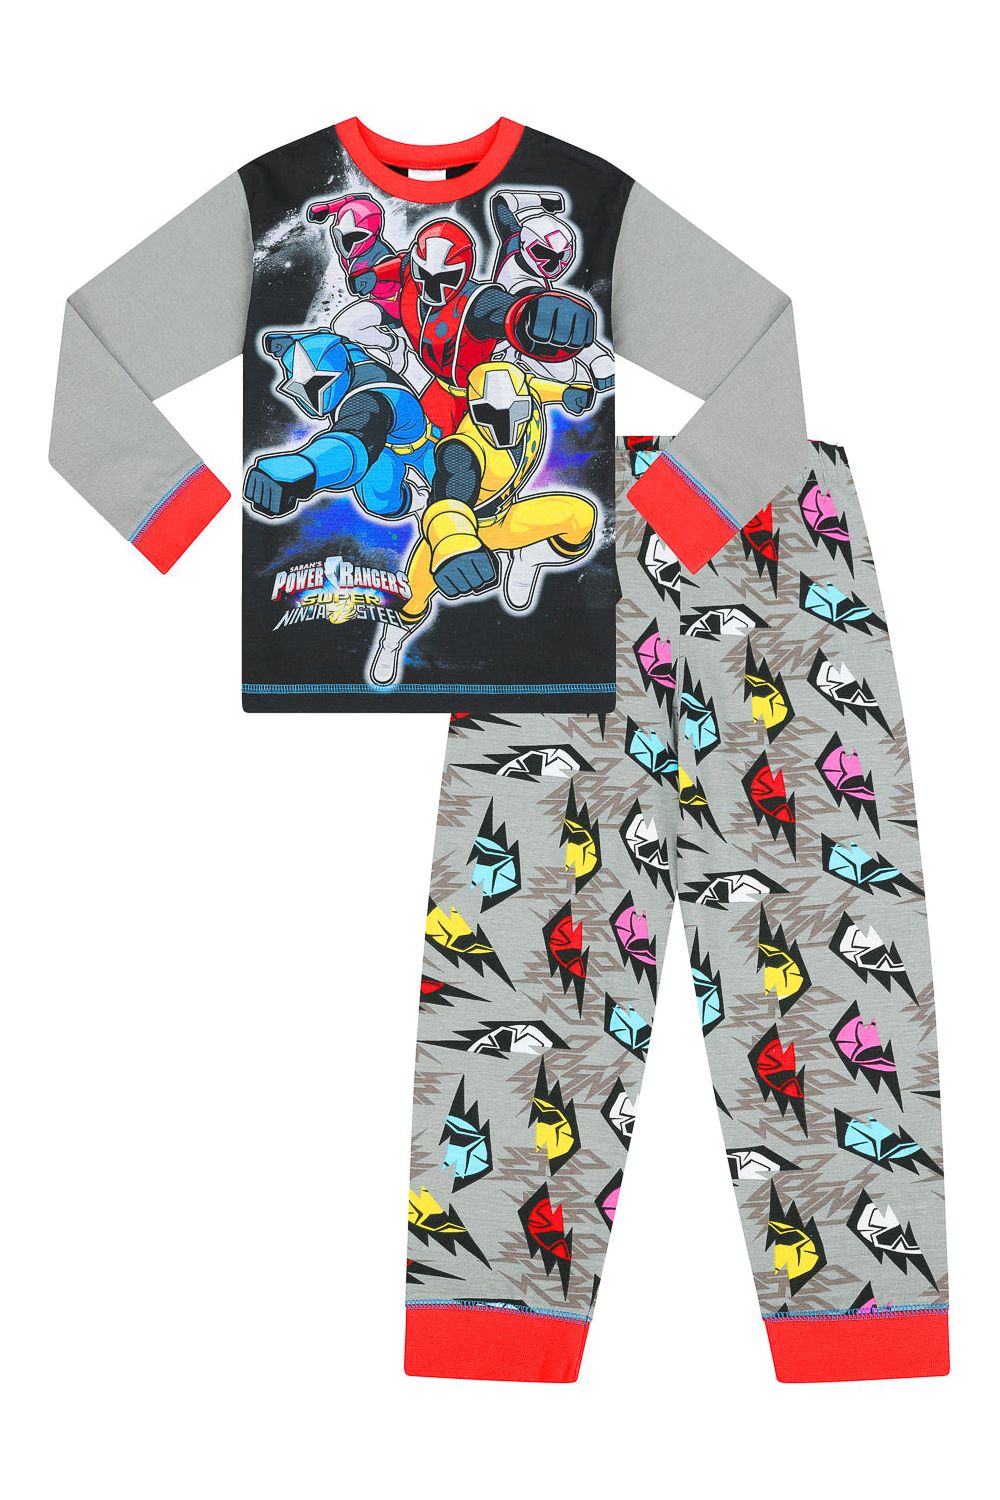 Boys Power Rangers Long Pyjamas - Pyjamas.com